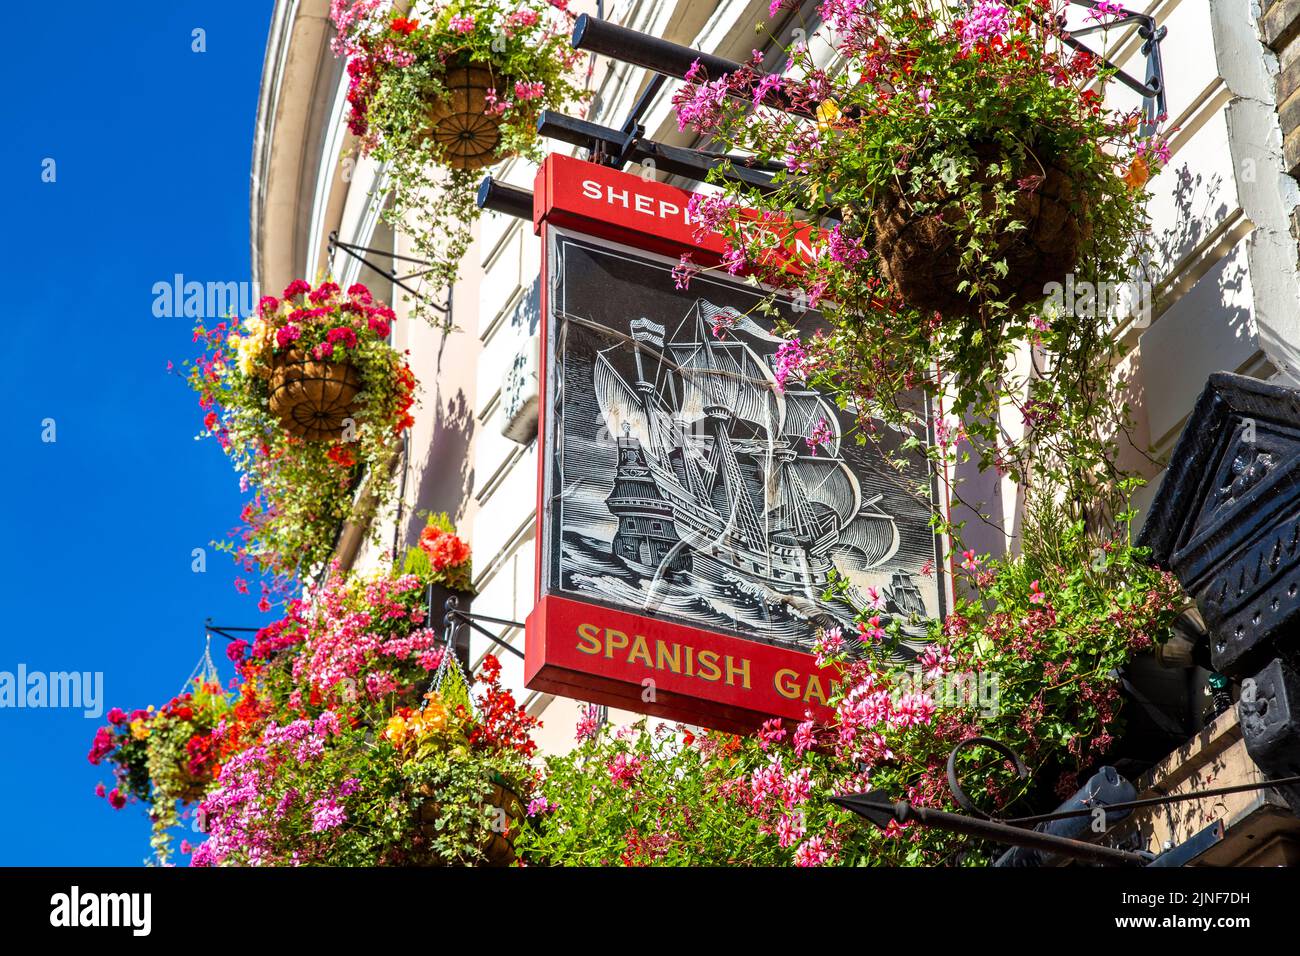 Letrero fuera del pub Galleon español, fachada decorada con flores, Greenwich, Londres, Reino Unido Foto de stock